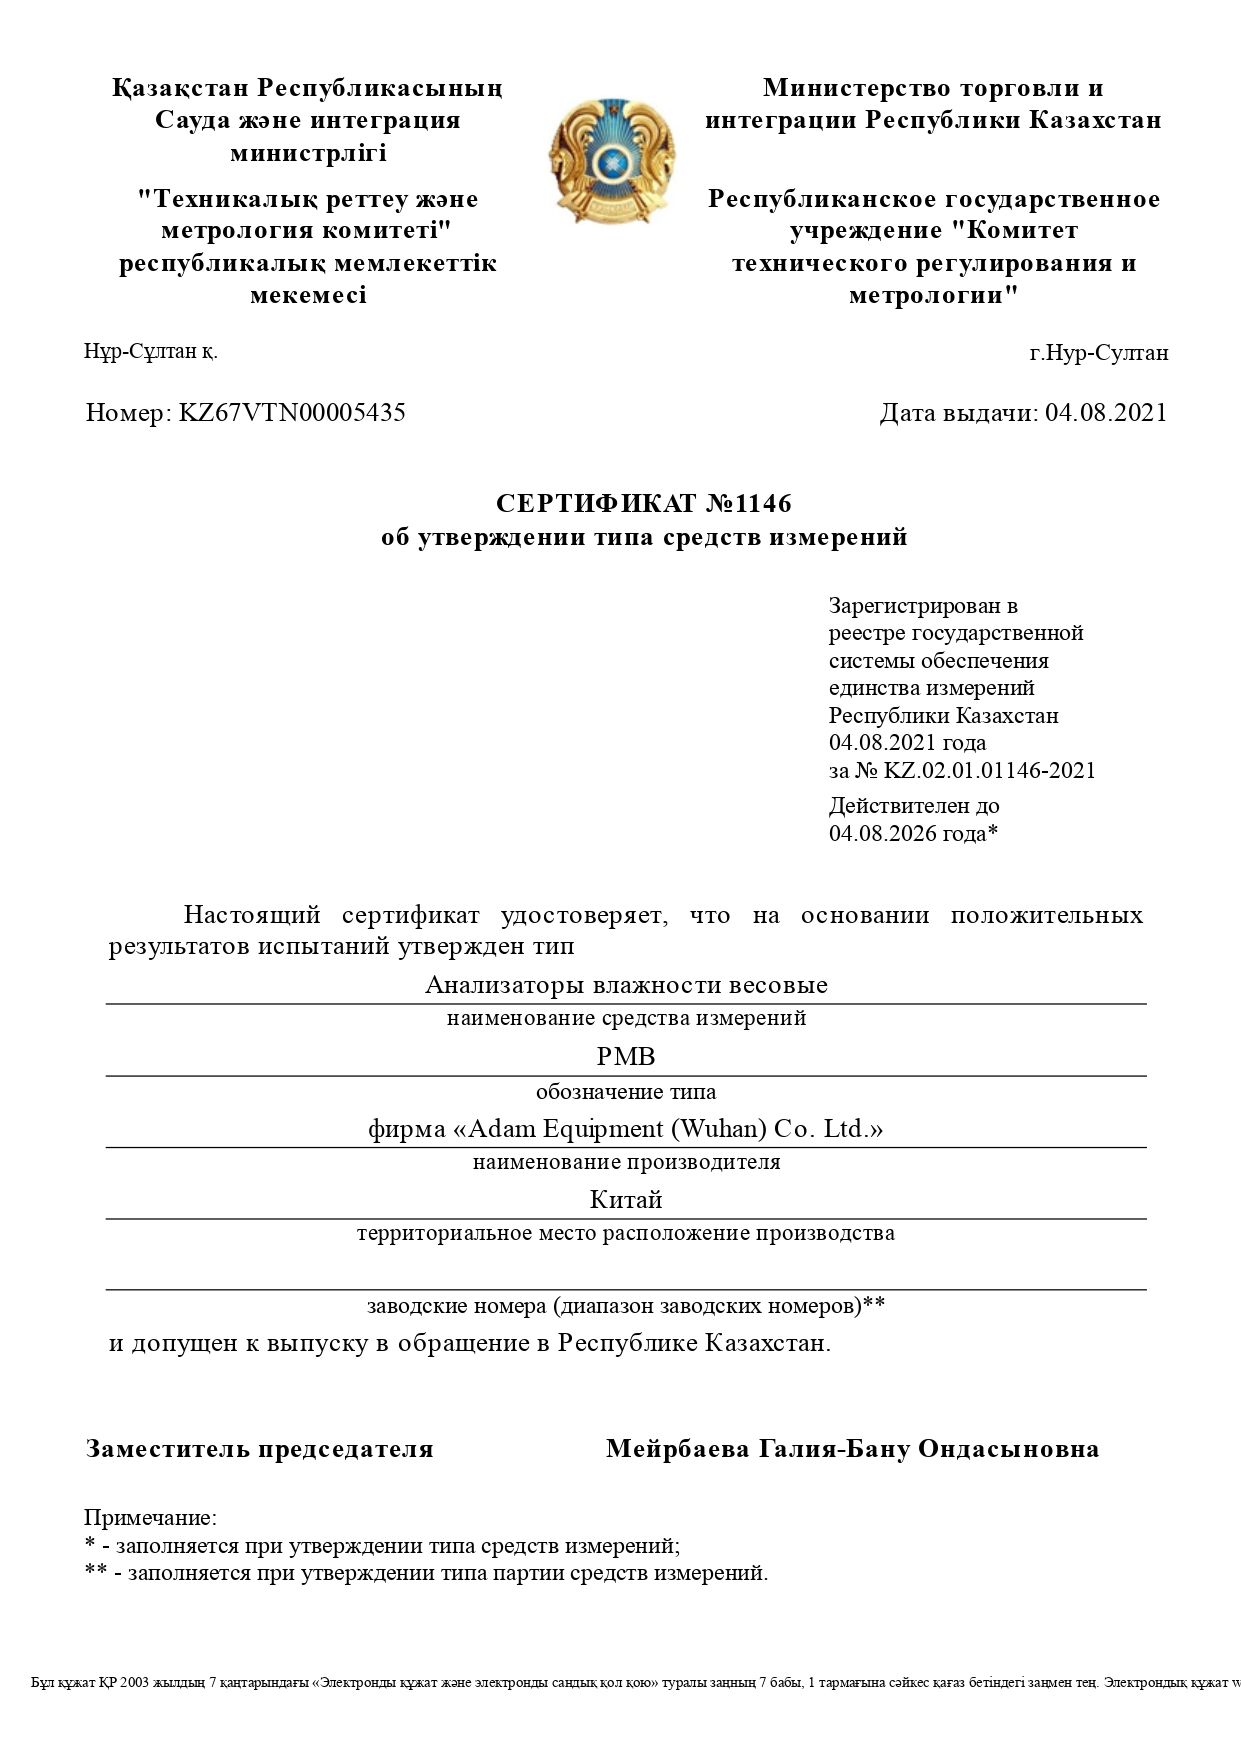 Получены сертификаты утверждения типа средств измерения на анализаторы влажности Adam PMB в Республике Казахстан.